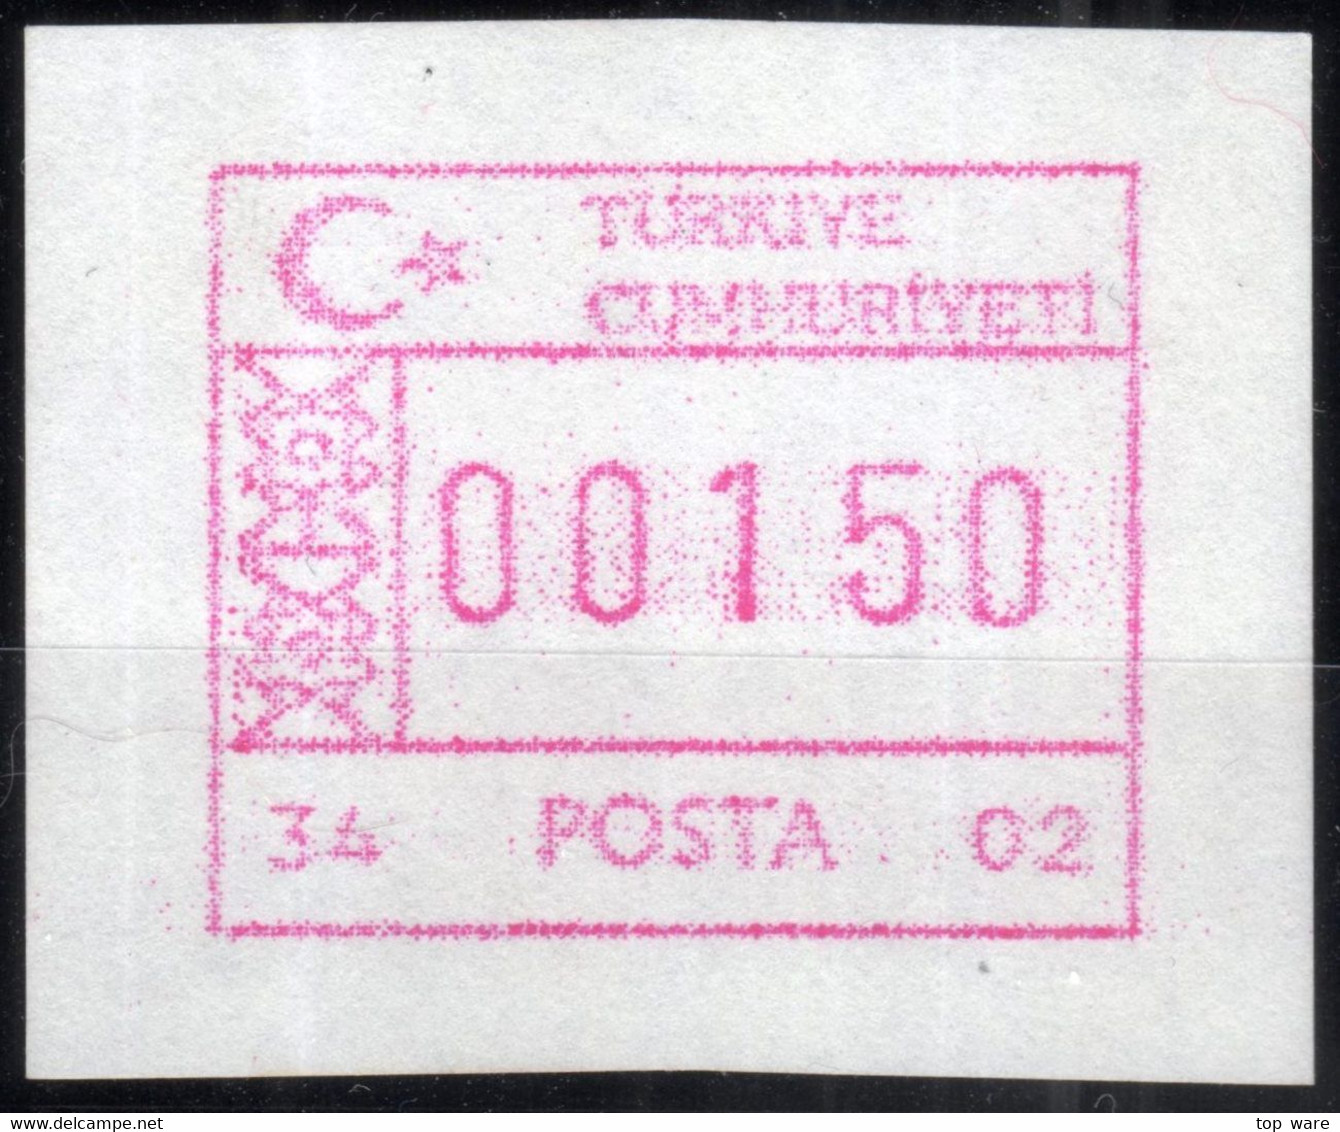 Türkiye Türkei ATM 34-02 / Istanbul Kadiköy Post Office / Weisses Test Papier MNH / Frama Etiquetas Automatenmarken - Automaten